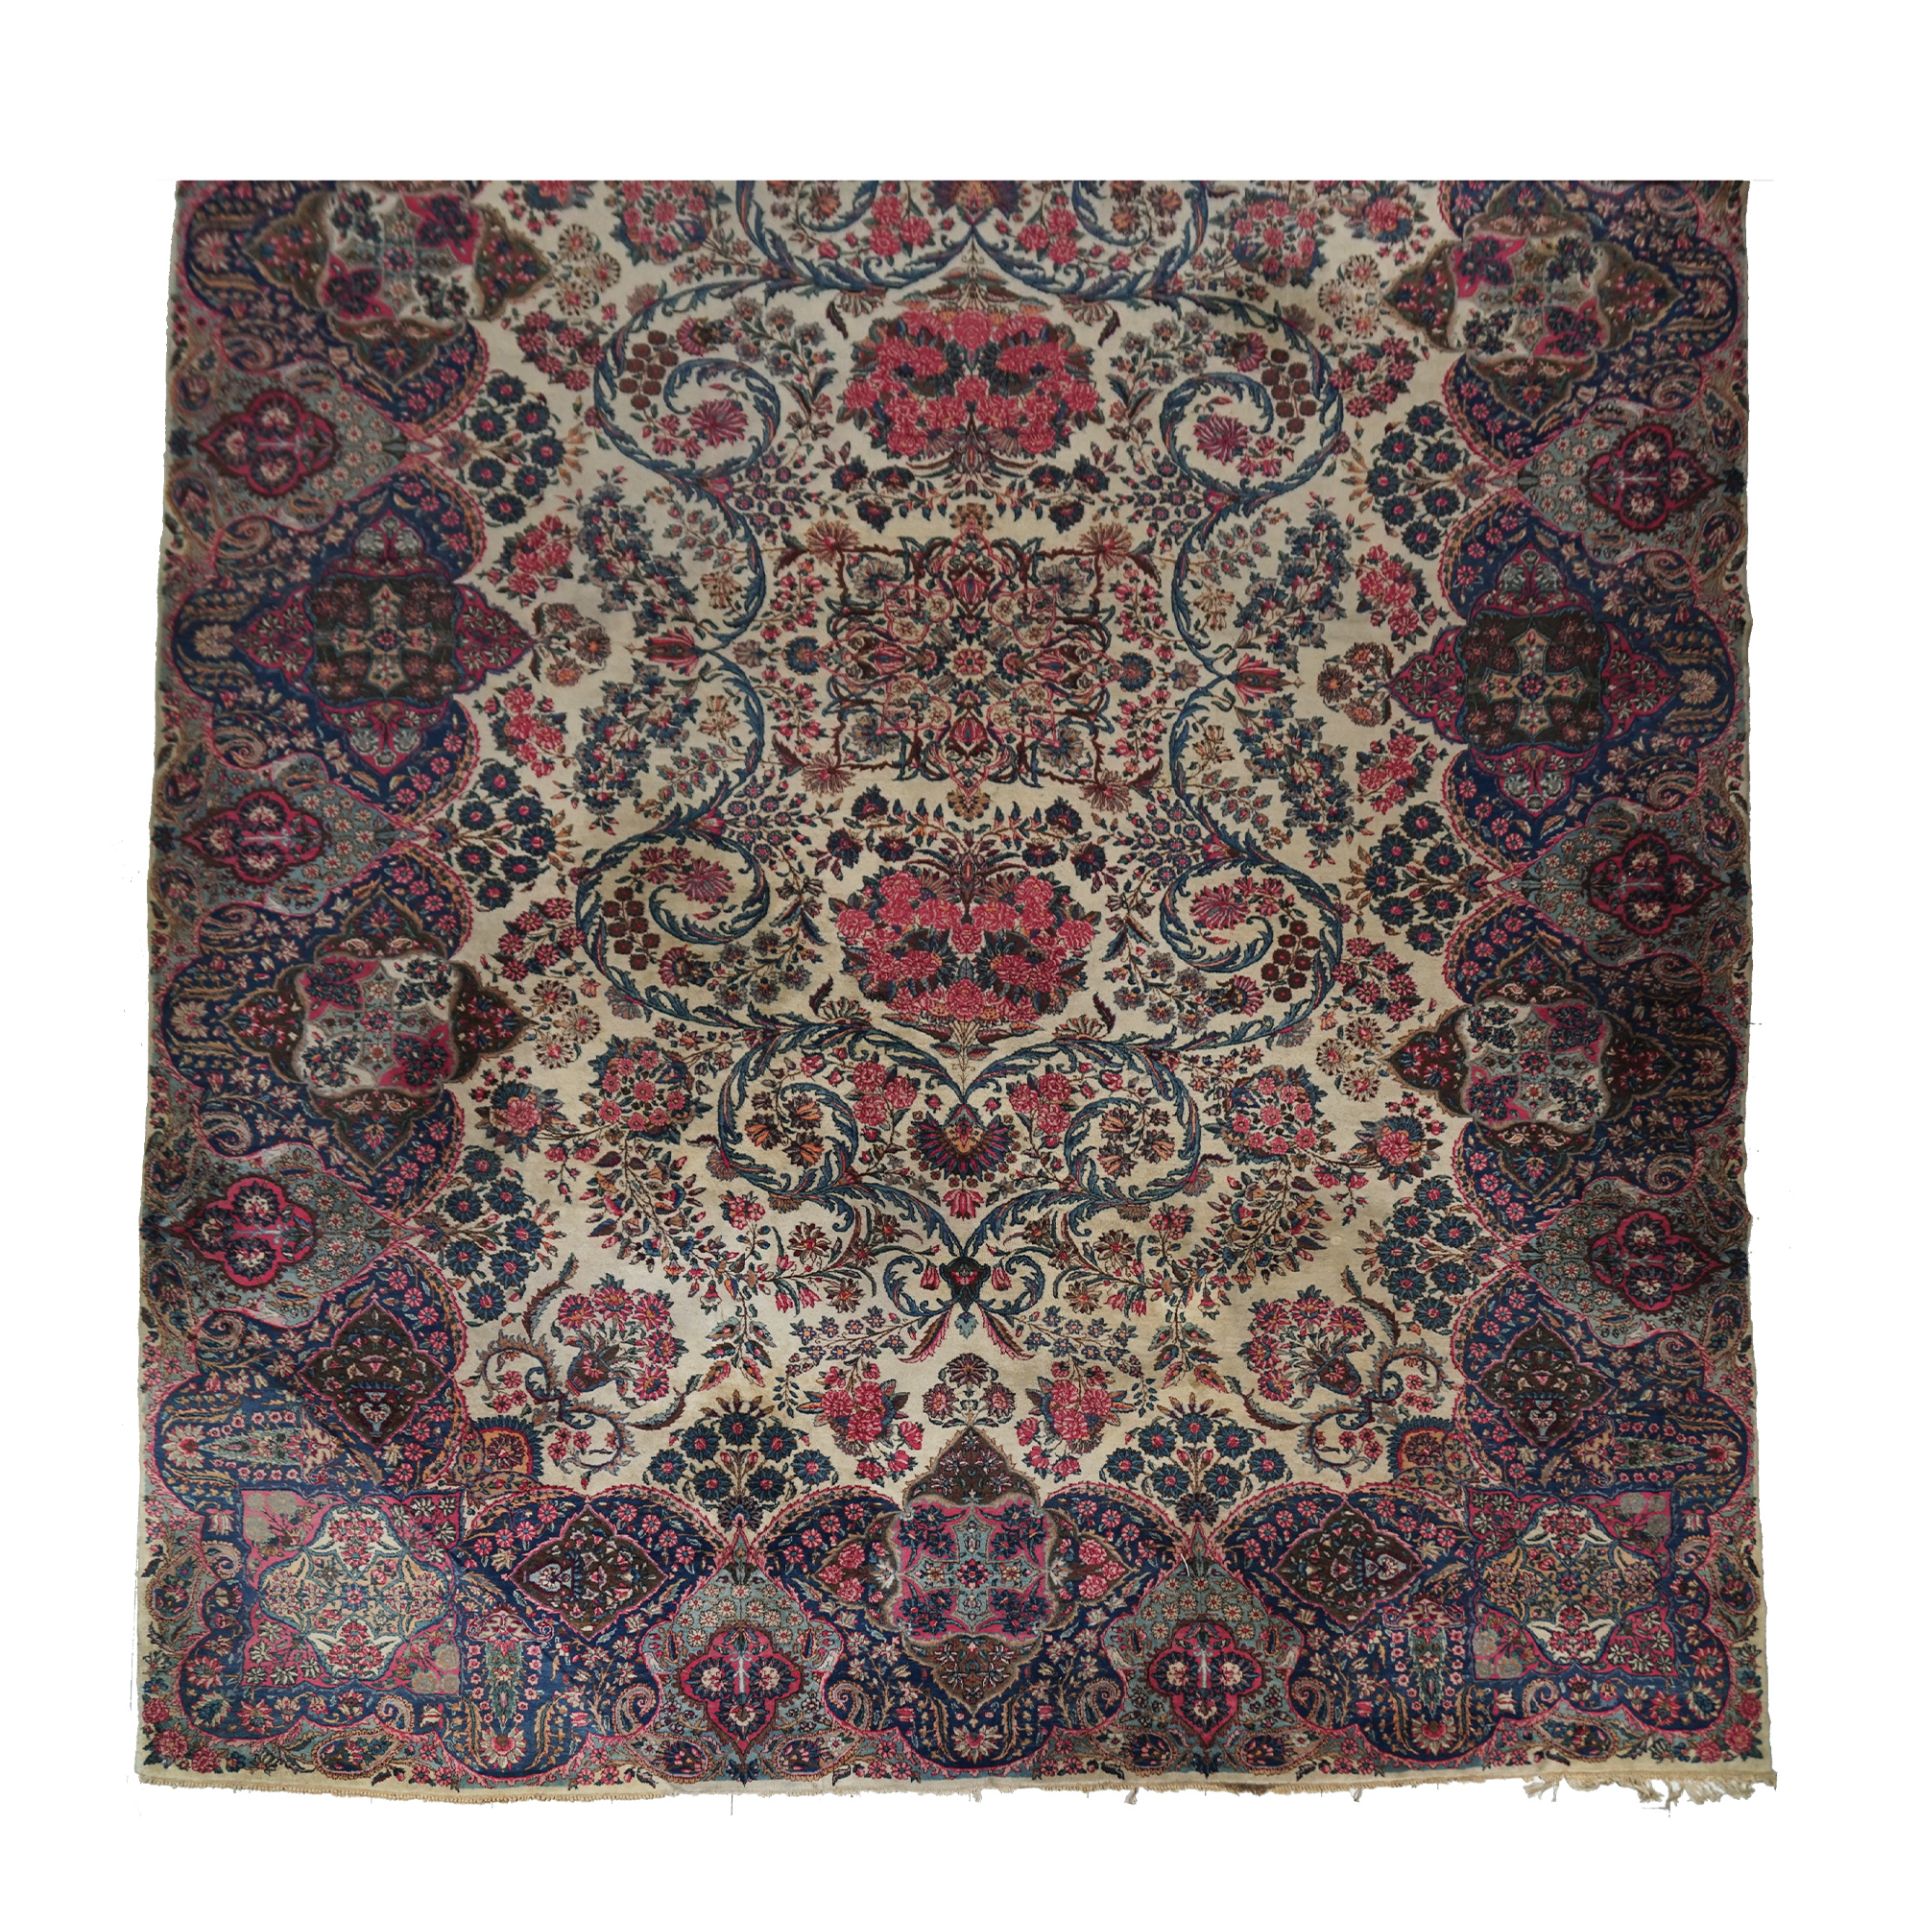 A large Kirman carpet